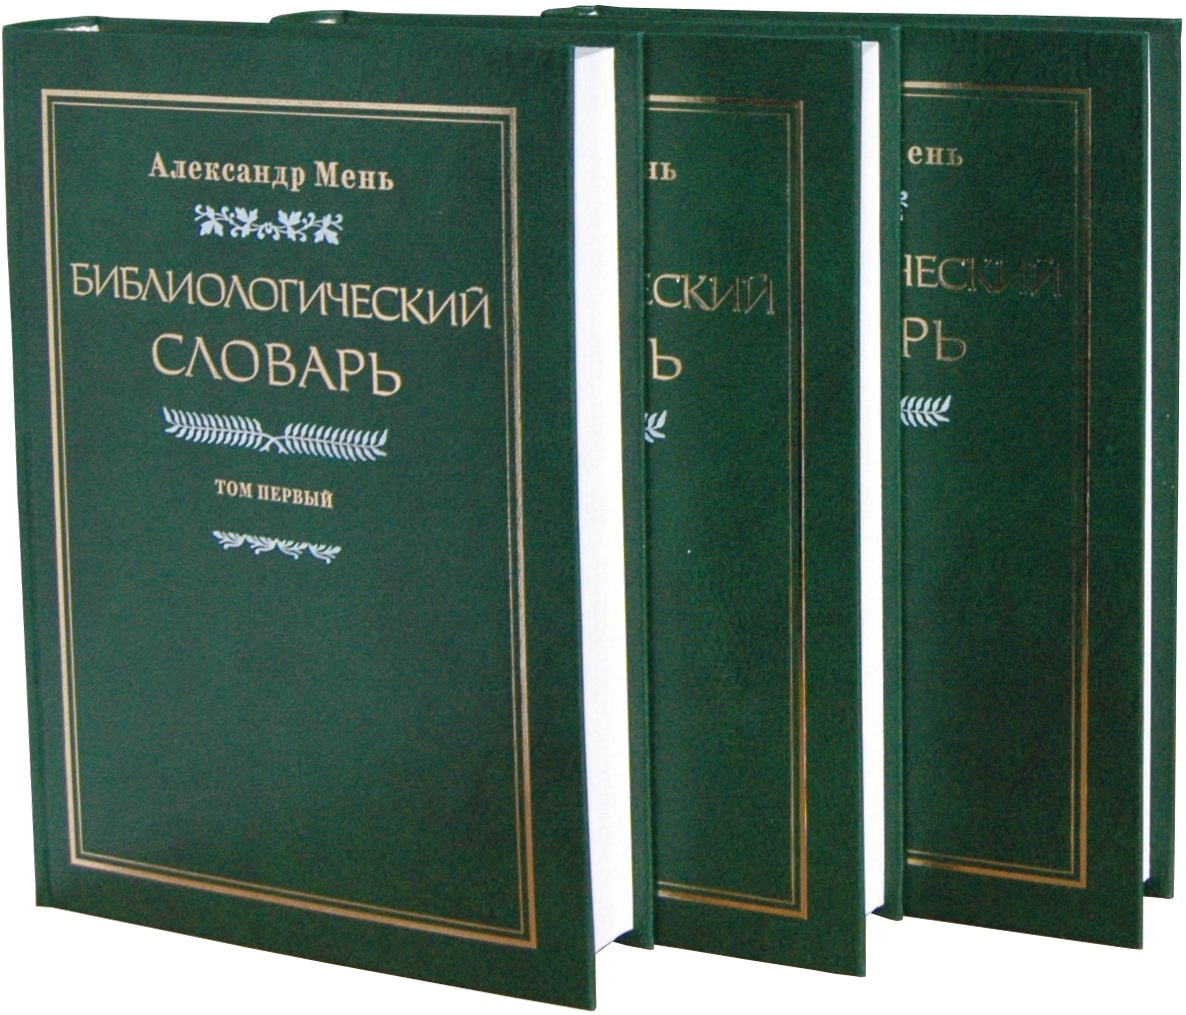 Библиологический словарь (А. Мень)